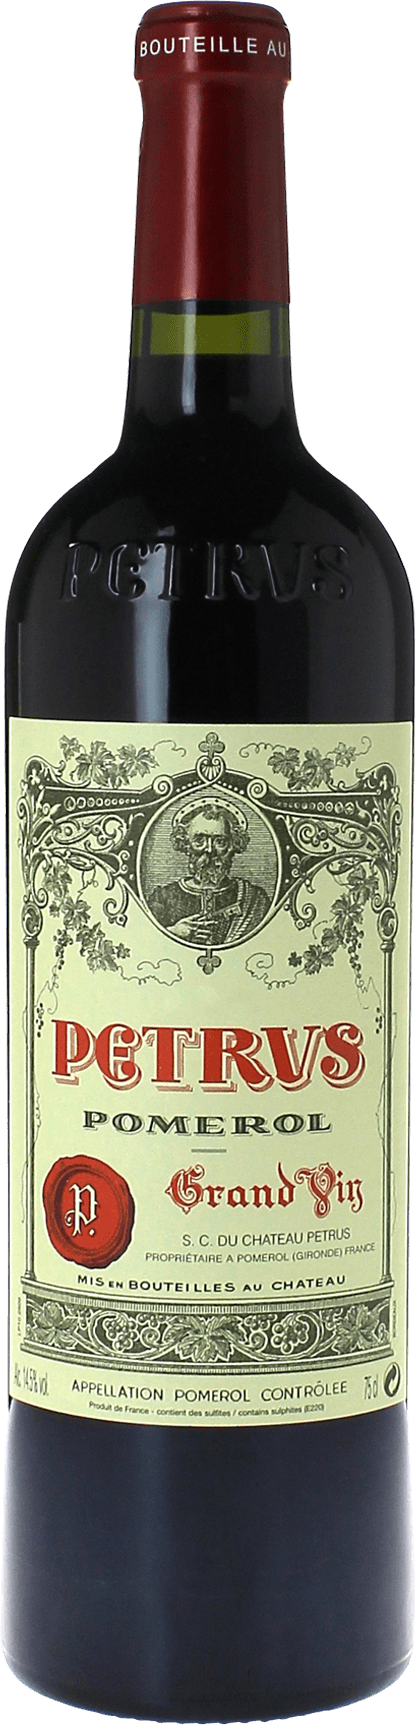 Petrus 2015  Pomerol, Bordeaux rouge